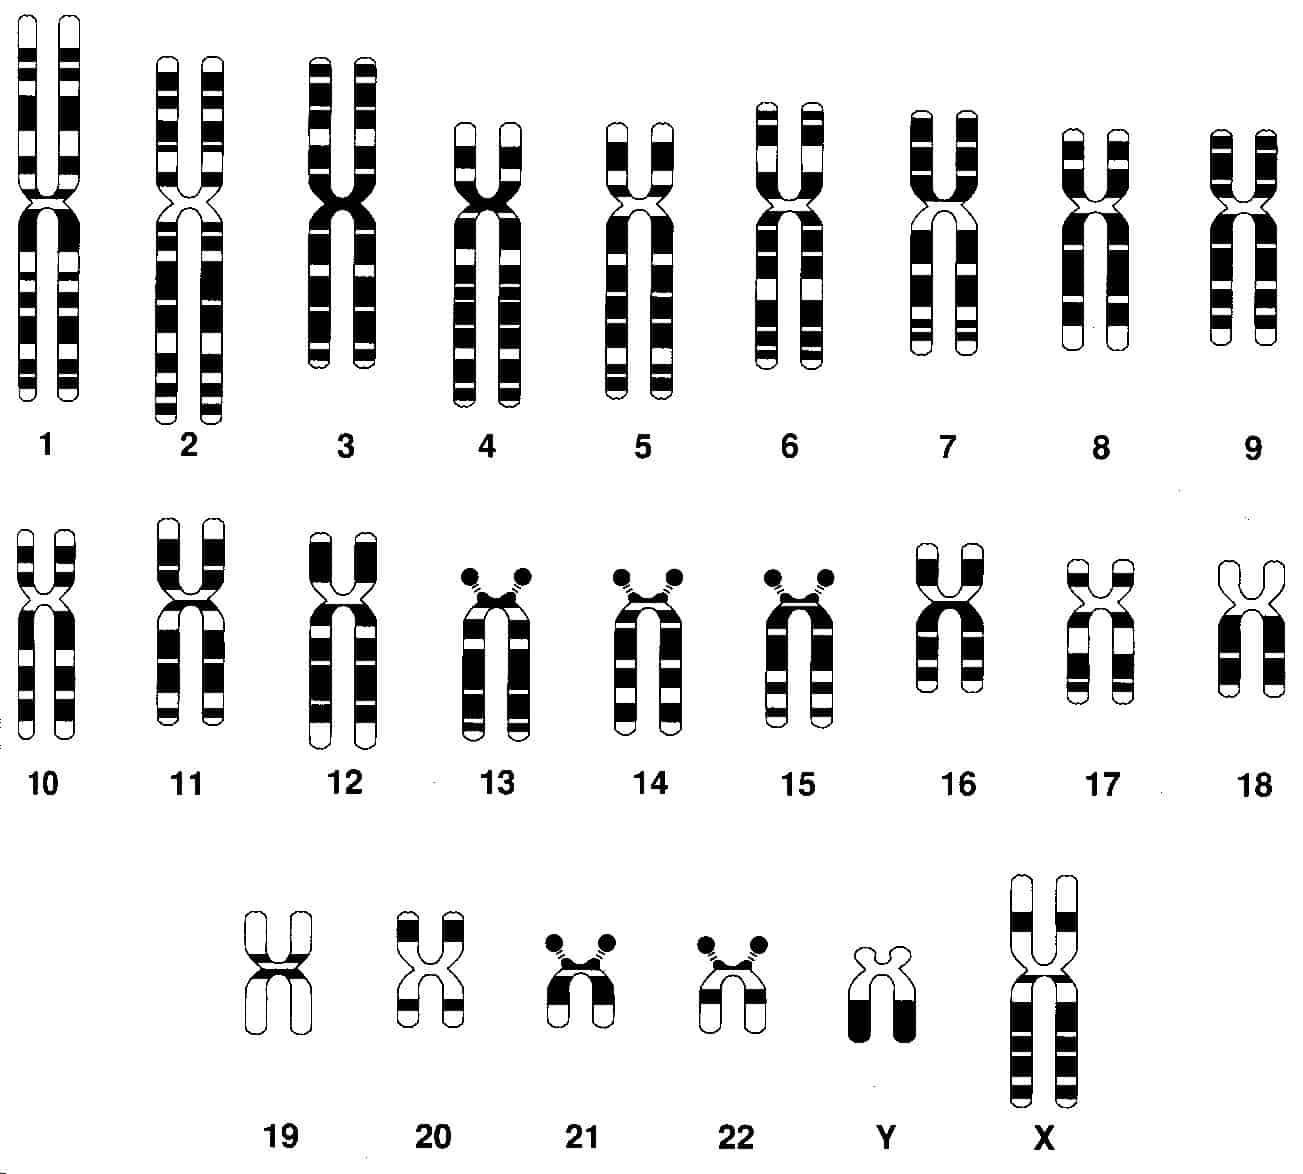 ¿Cuántos cromosomas sexuales tiene un óvulo humano?